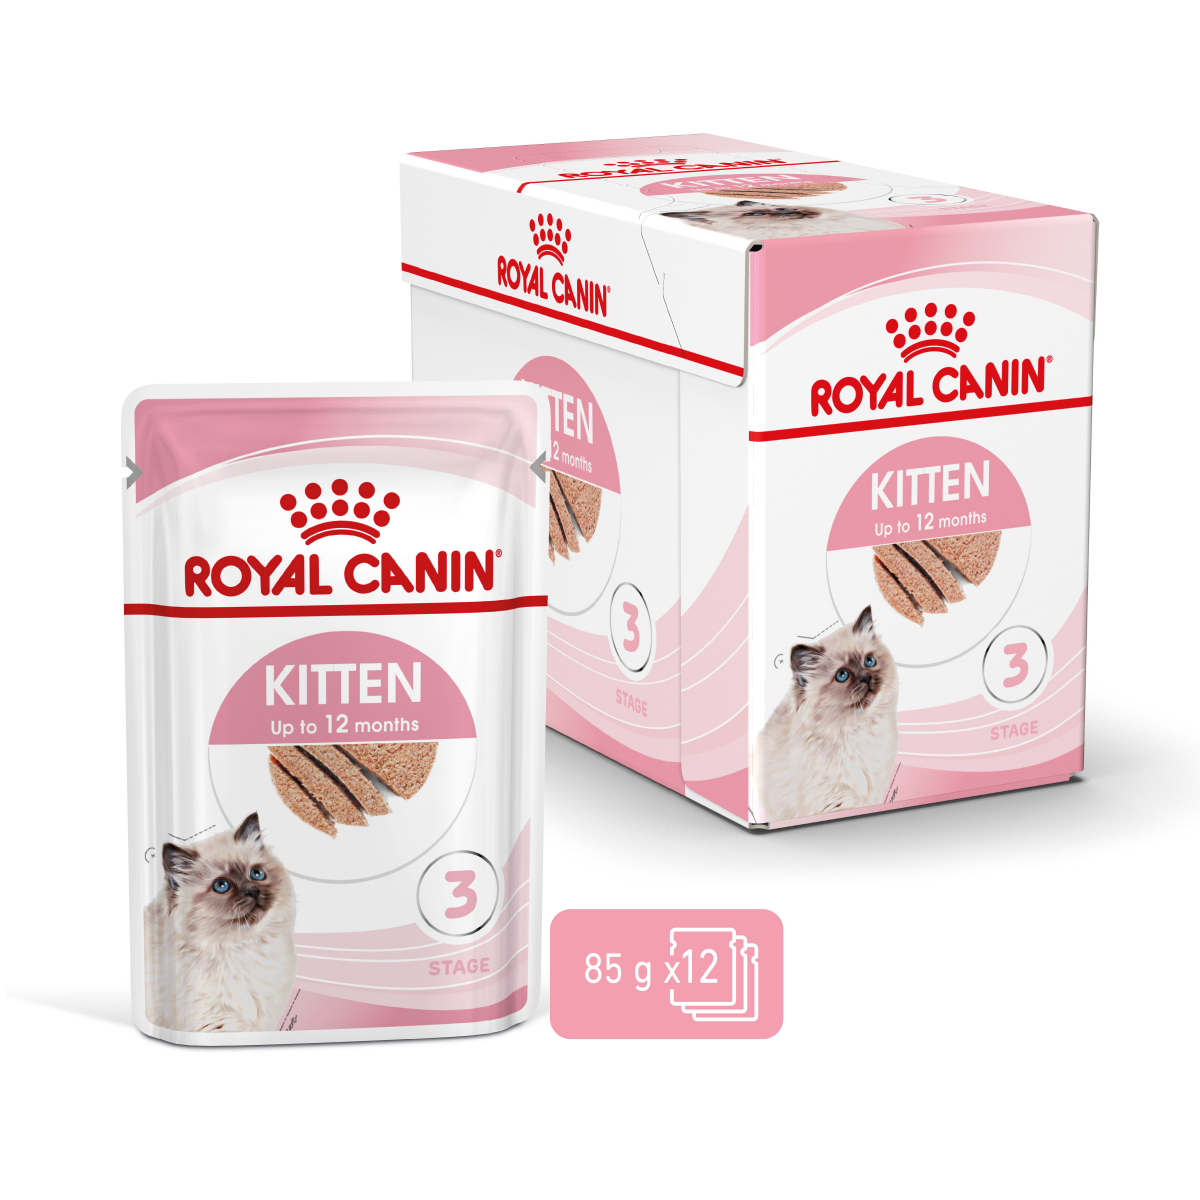 Royal Canin Kitten natvoer